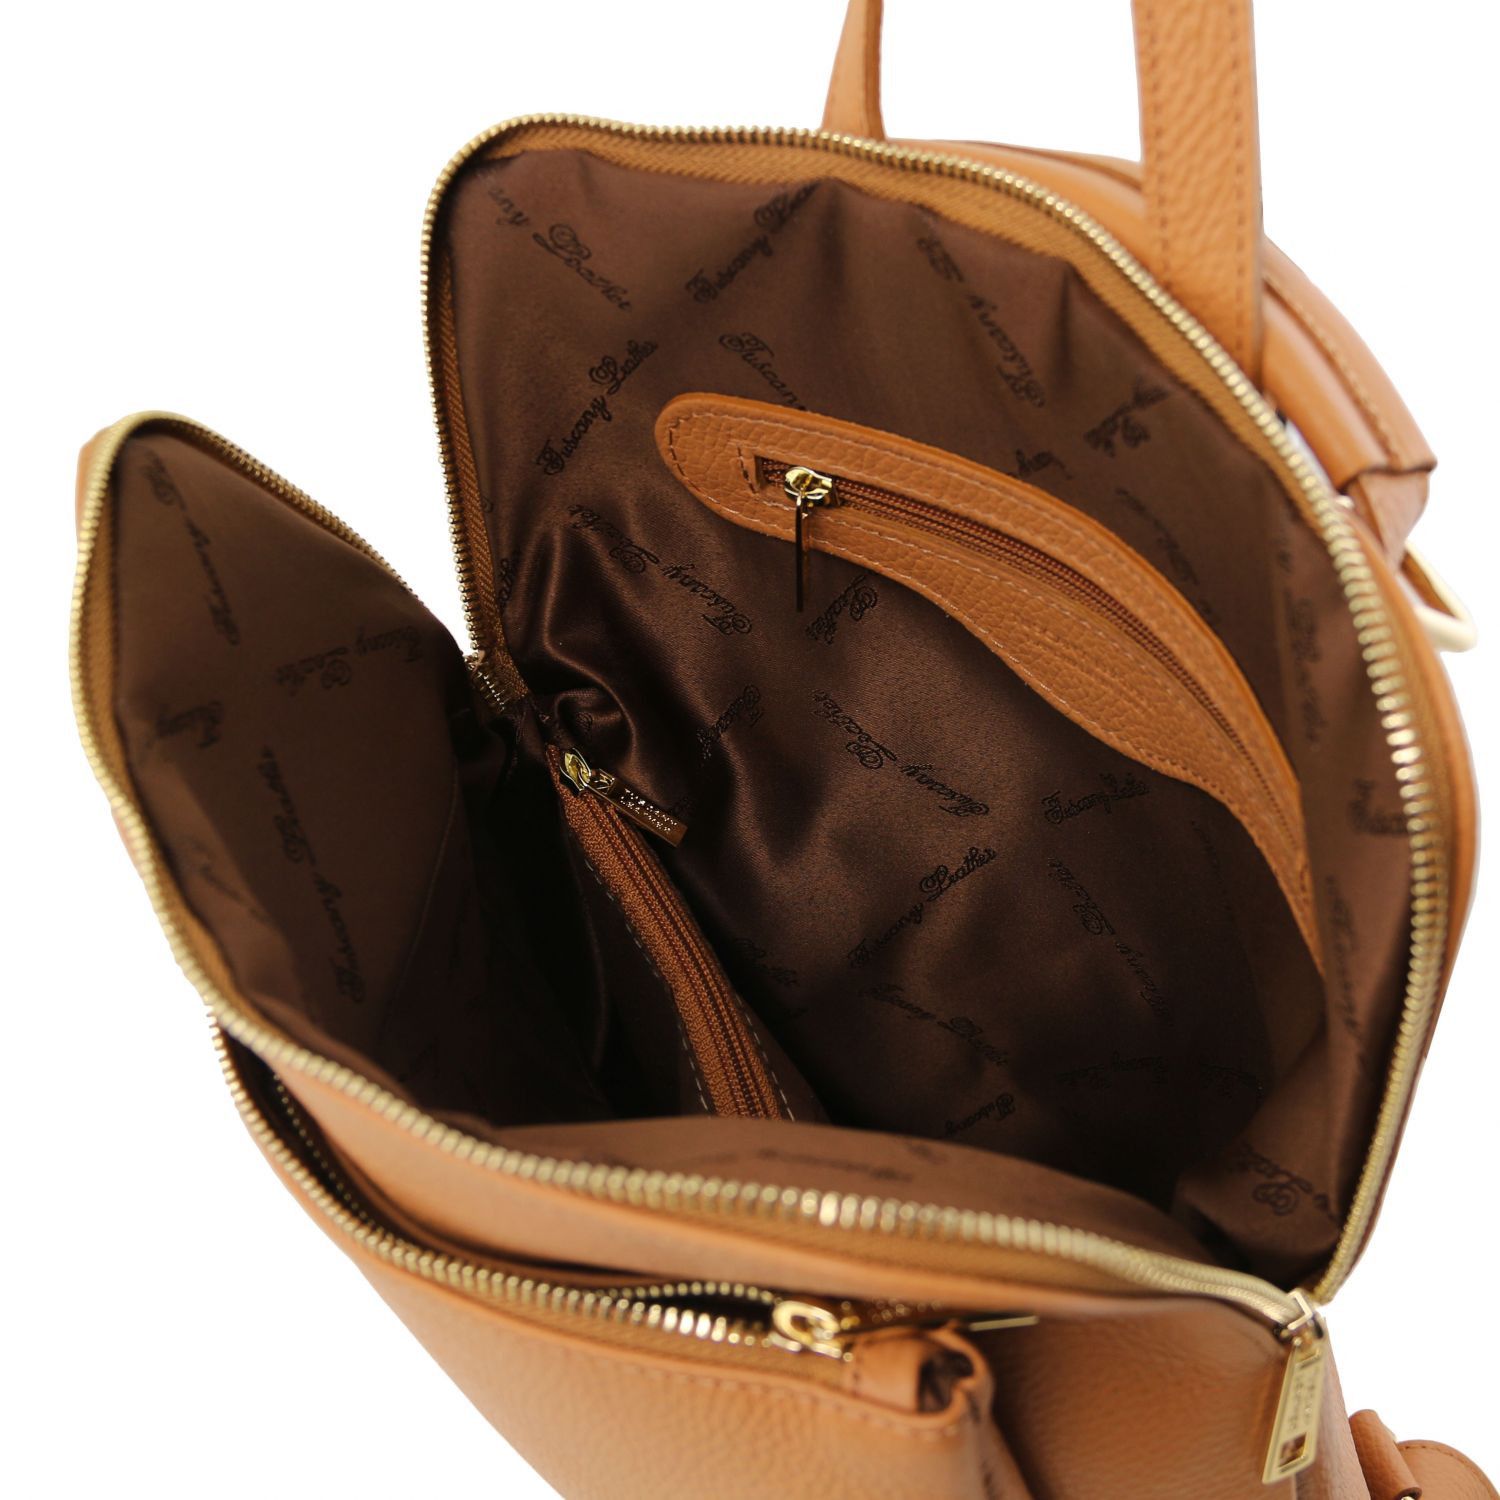 TL Bag - Sac à dos pour femme en cuir souple - Cognac (TL141682)